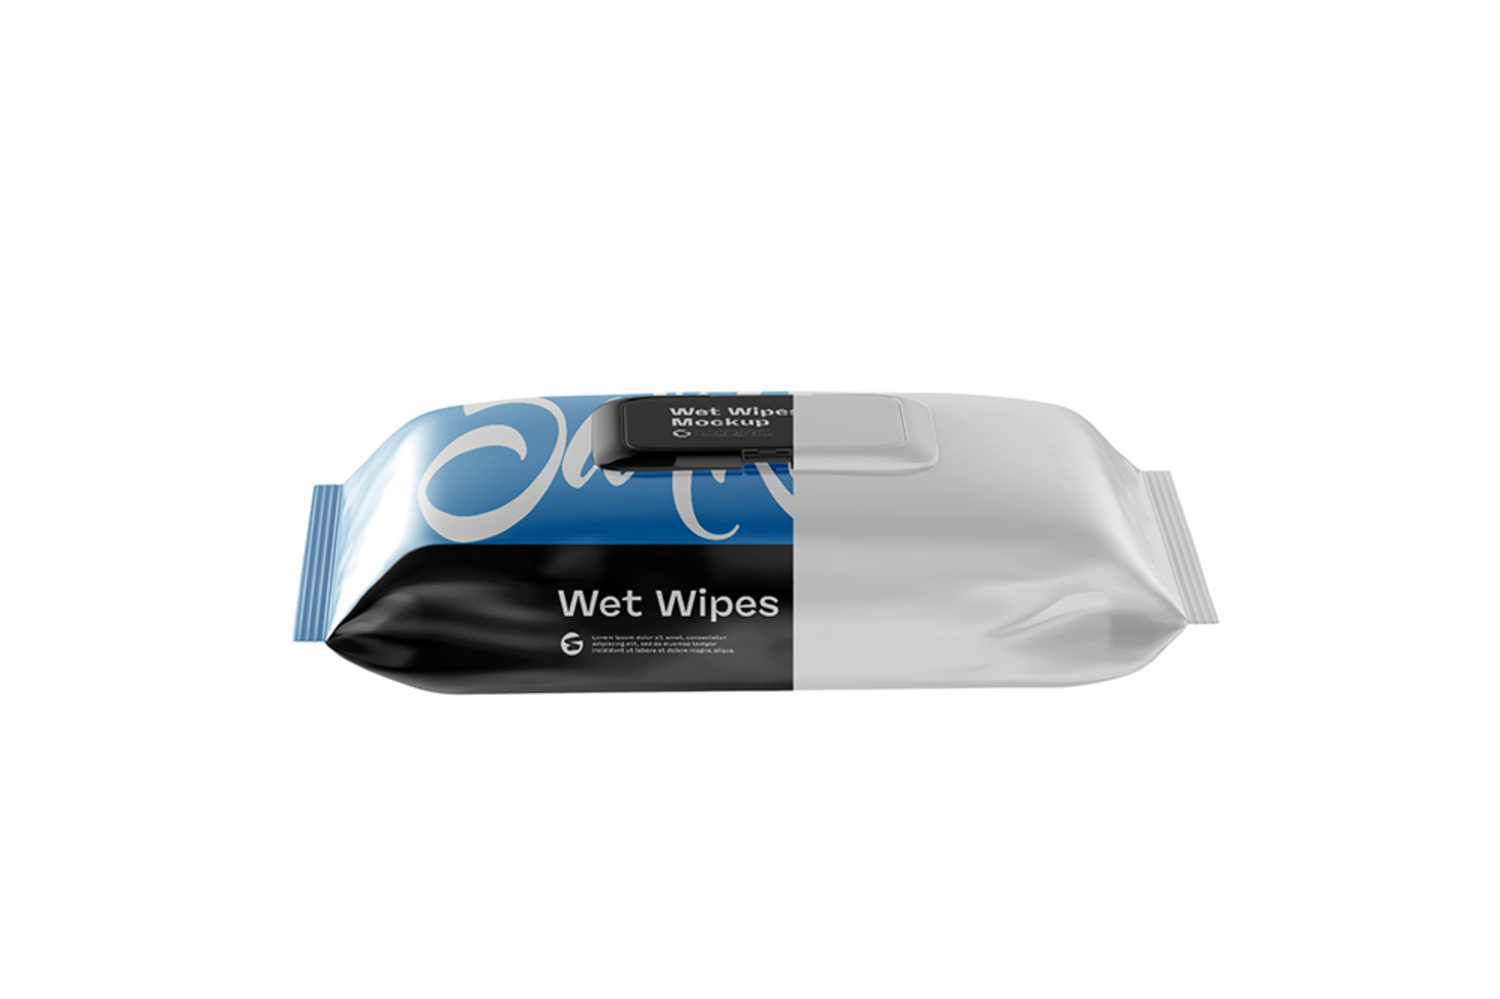 54 塑料盖湿纸巾包装样机 (psd)Wet Wipes Pack With Plastic Mockup 6063397